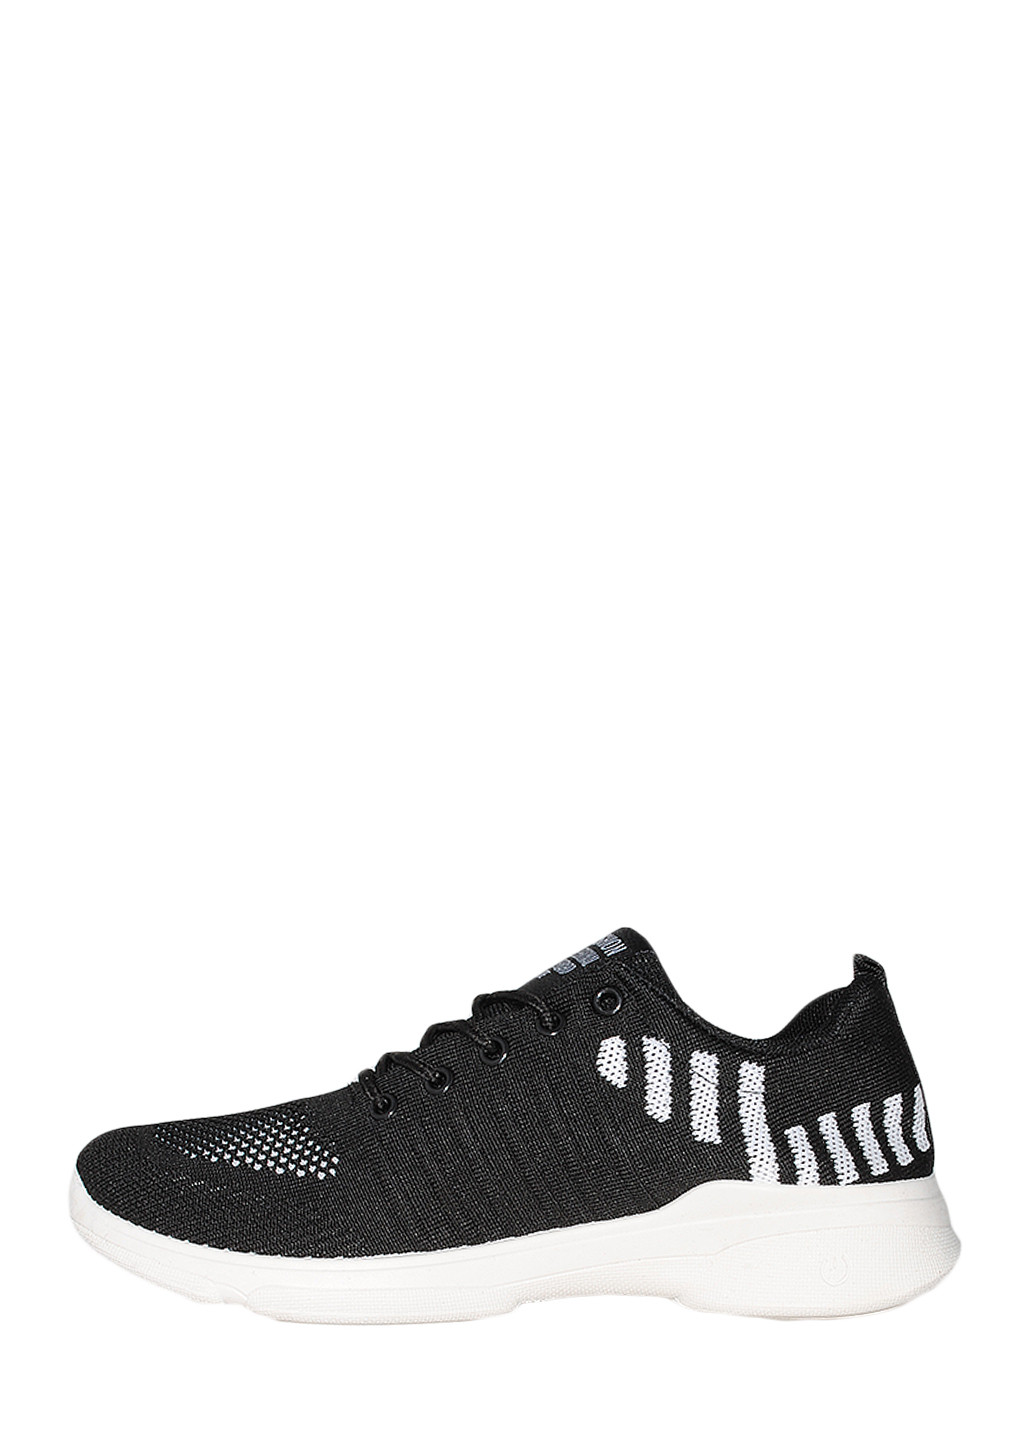 Черно-белые демисезонные кроссовки n45 black-white Ideal